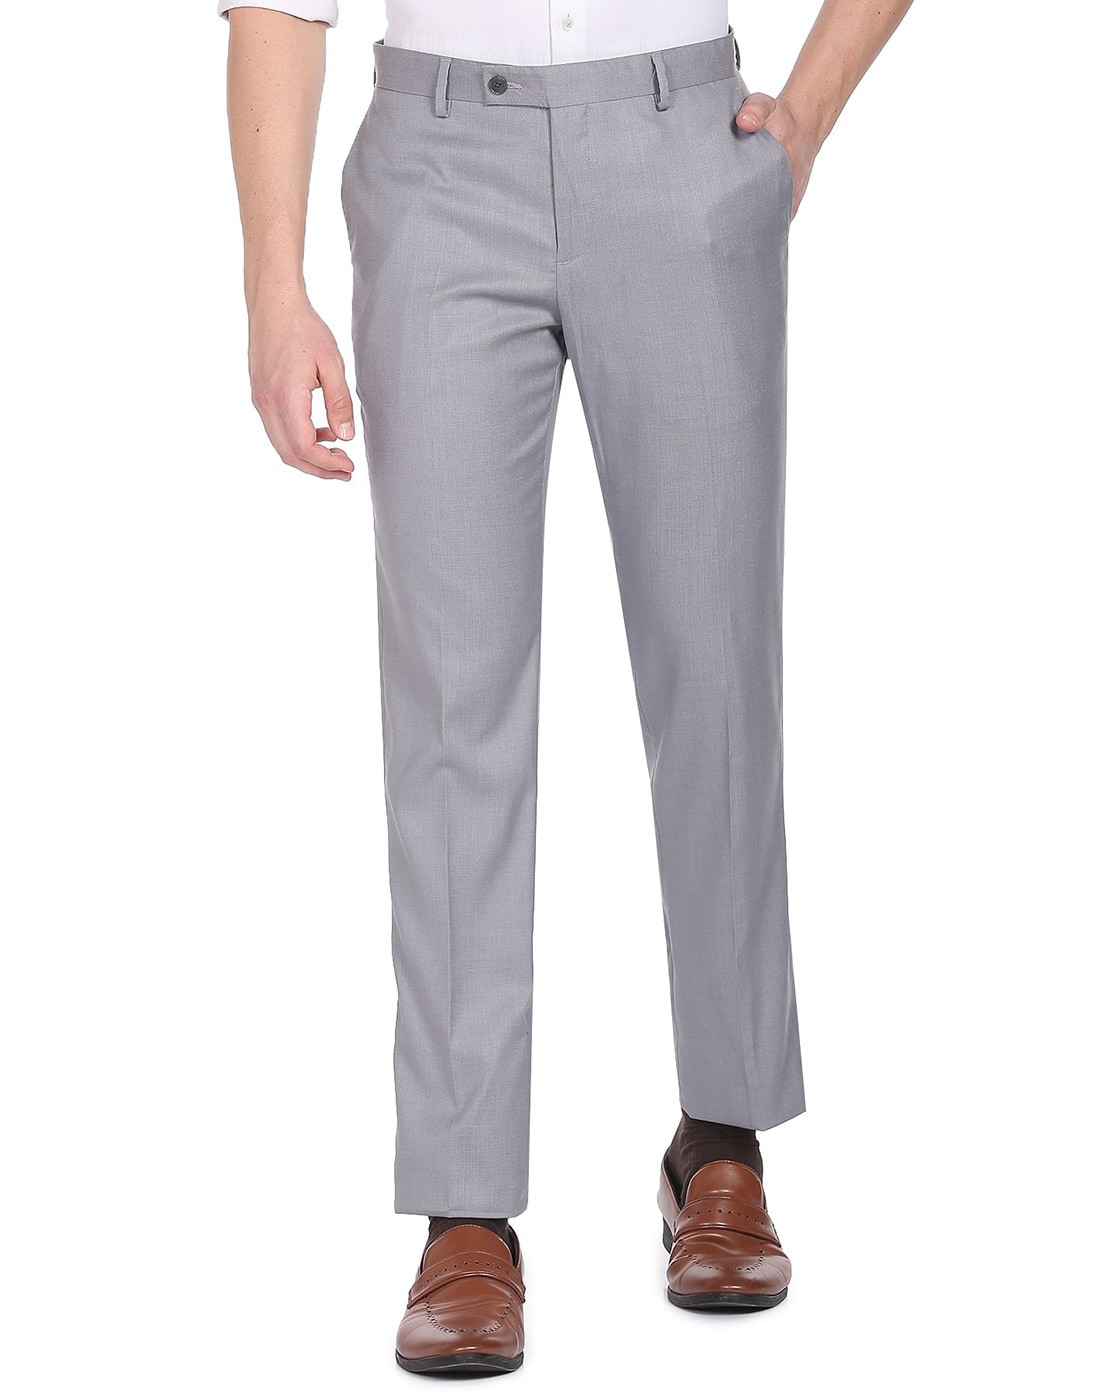 Buy Khaki Trousers  Pants for Men by Arrow Sports Online  Ajiocom